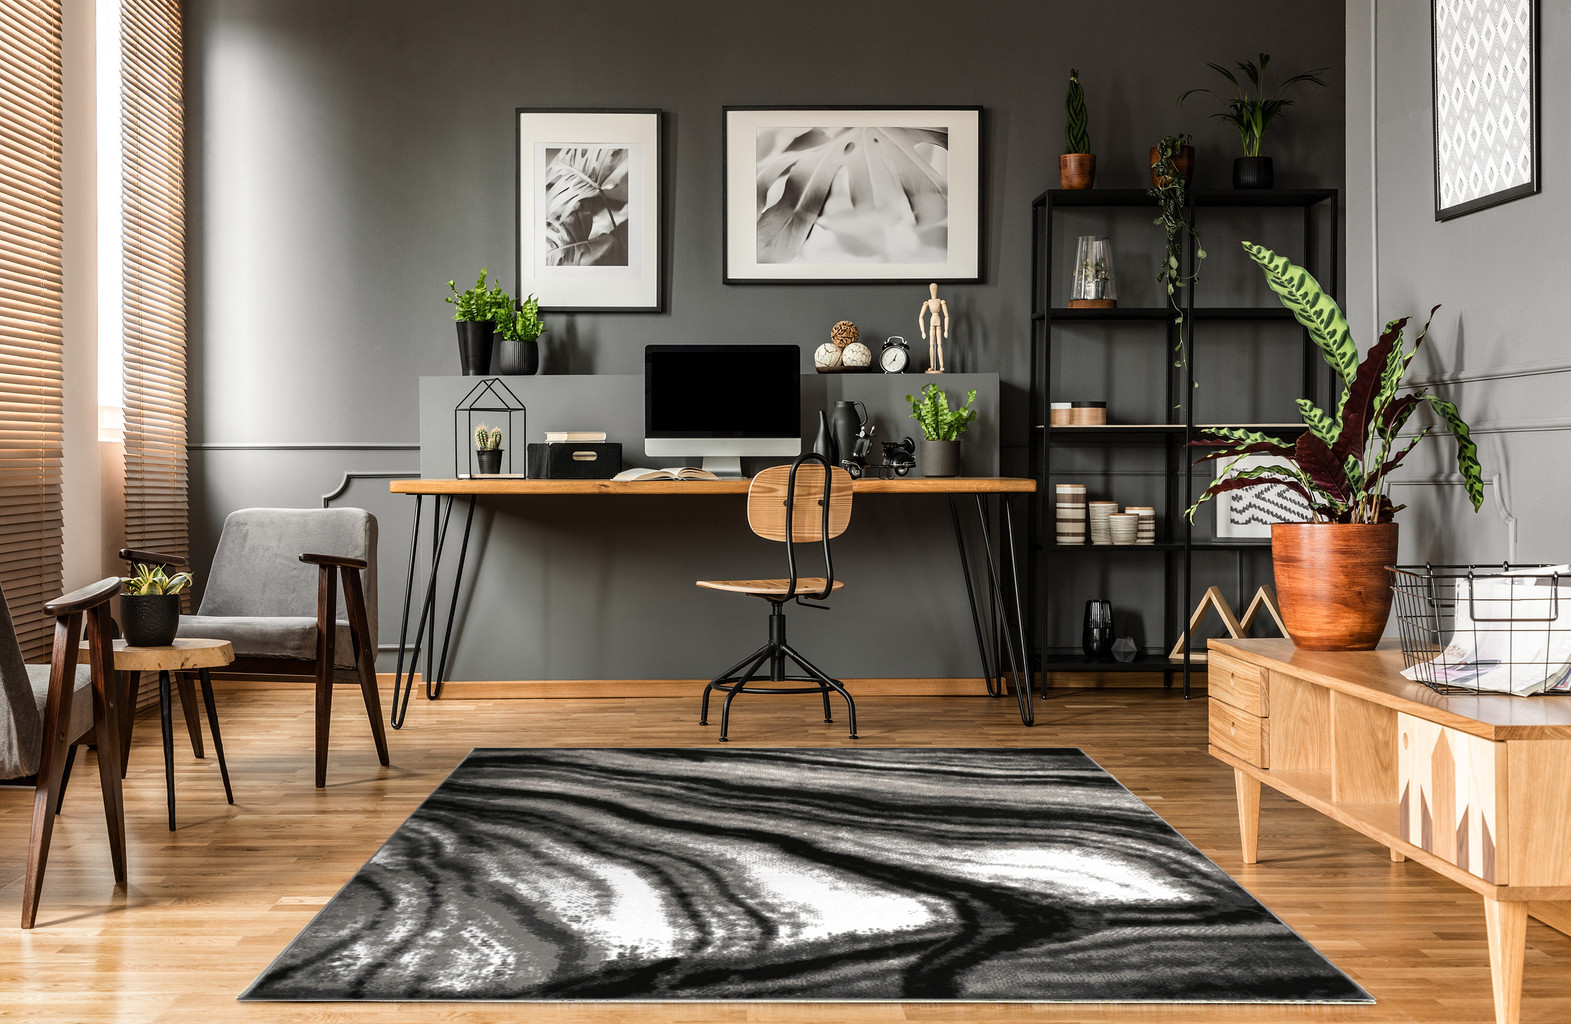 Umelecký koberec ALMAS 30 s abstraktným vzorom v kombinácii čiernej, bielej a sivej farby - Carpetforyou obrázok 2